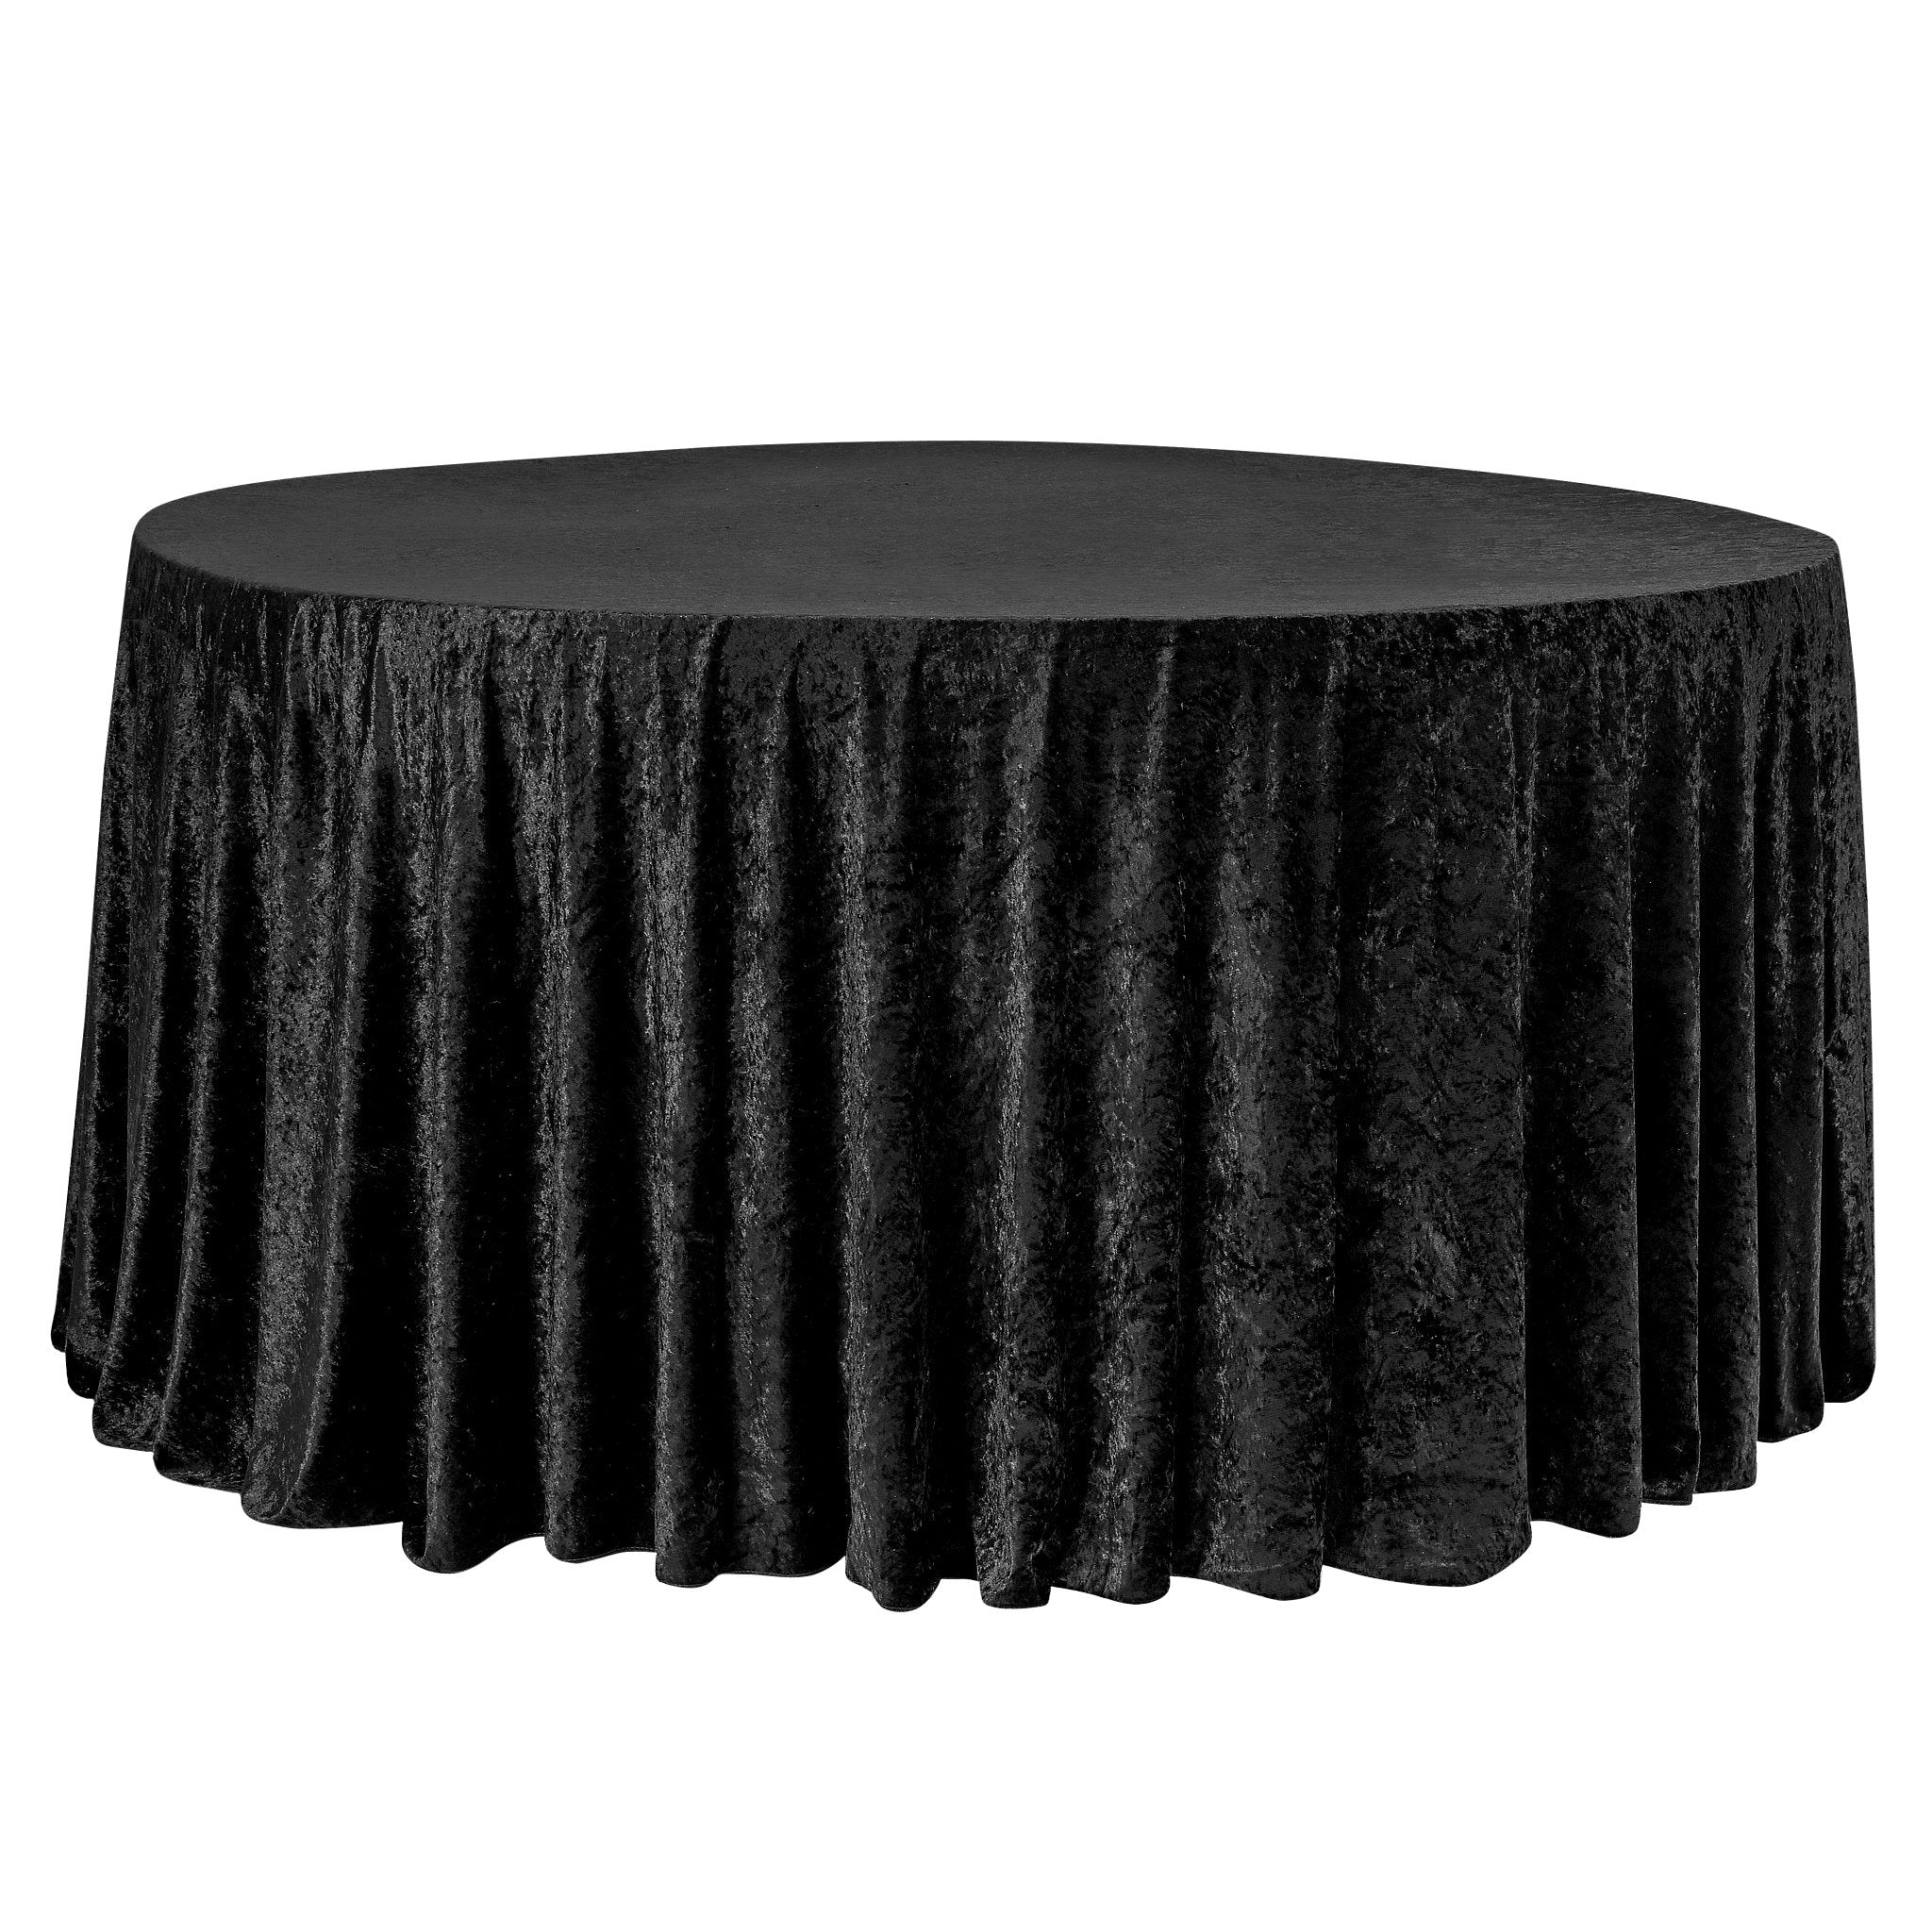 Velvet 132" Round Tablecloth - Black